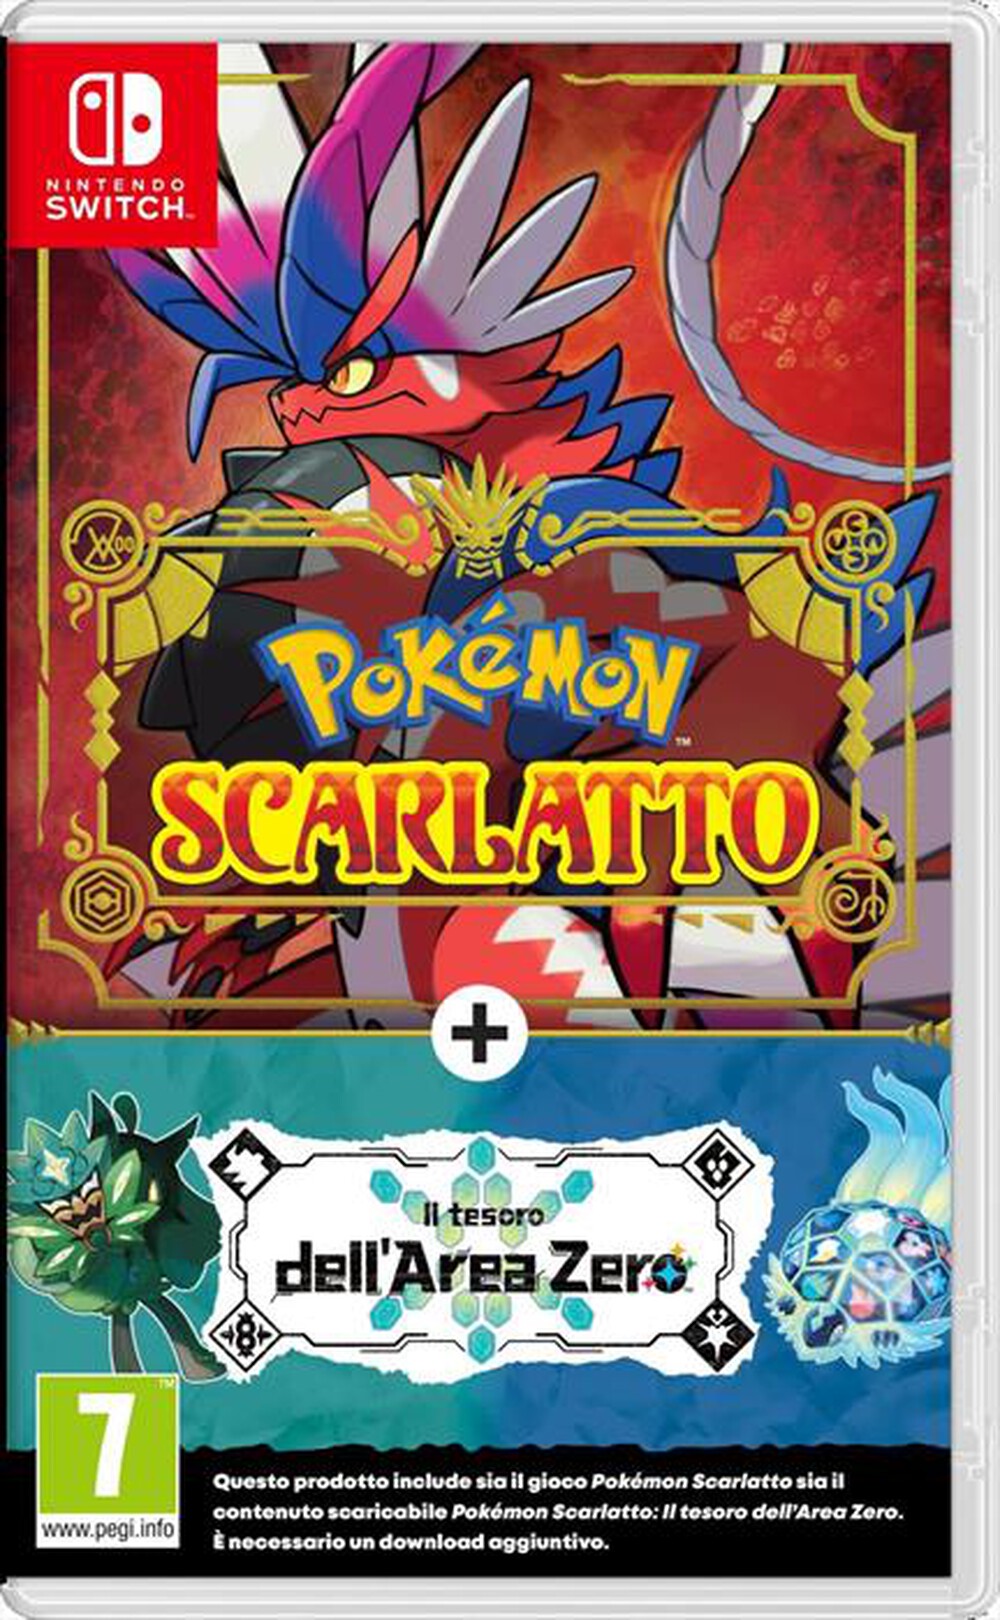 "NINTENDO - Bundle Pack Pokémon Scarlatto + Il Tesoro dell’Are"